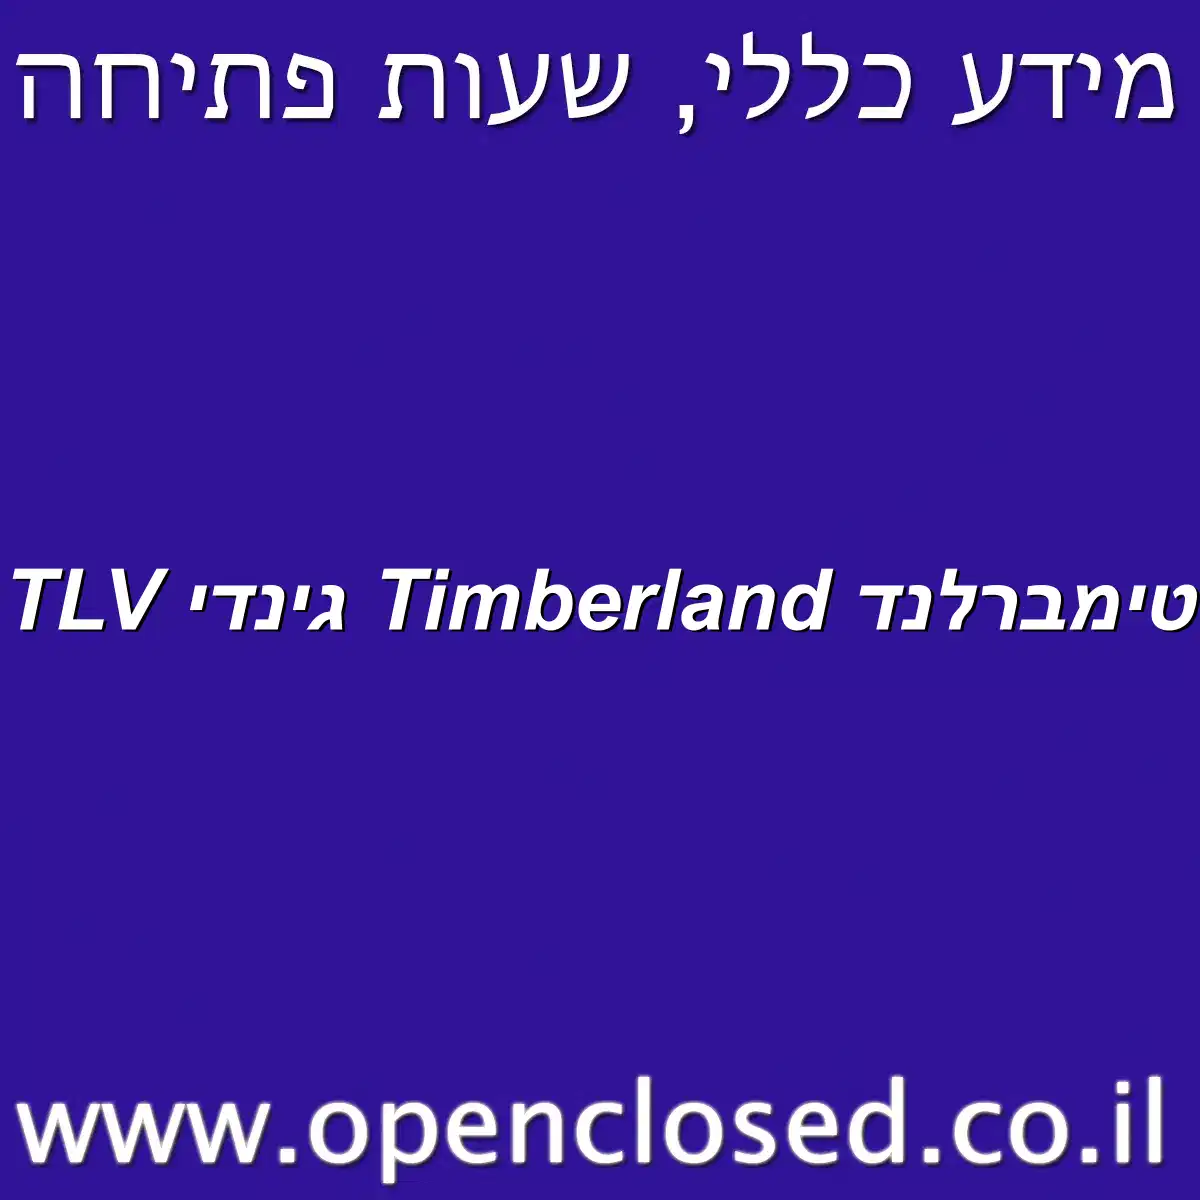 טימברלנד Timberland גינדי TLV